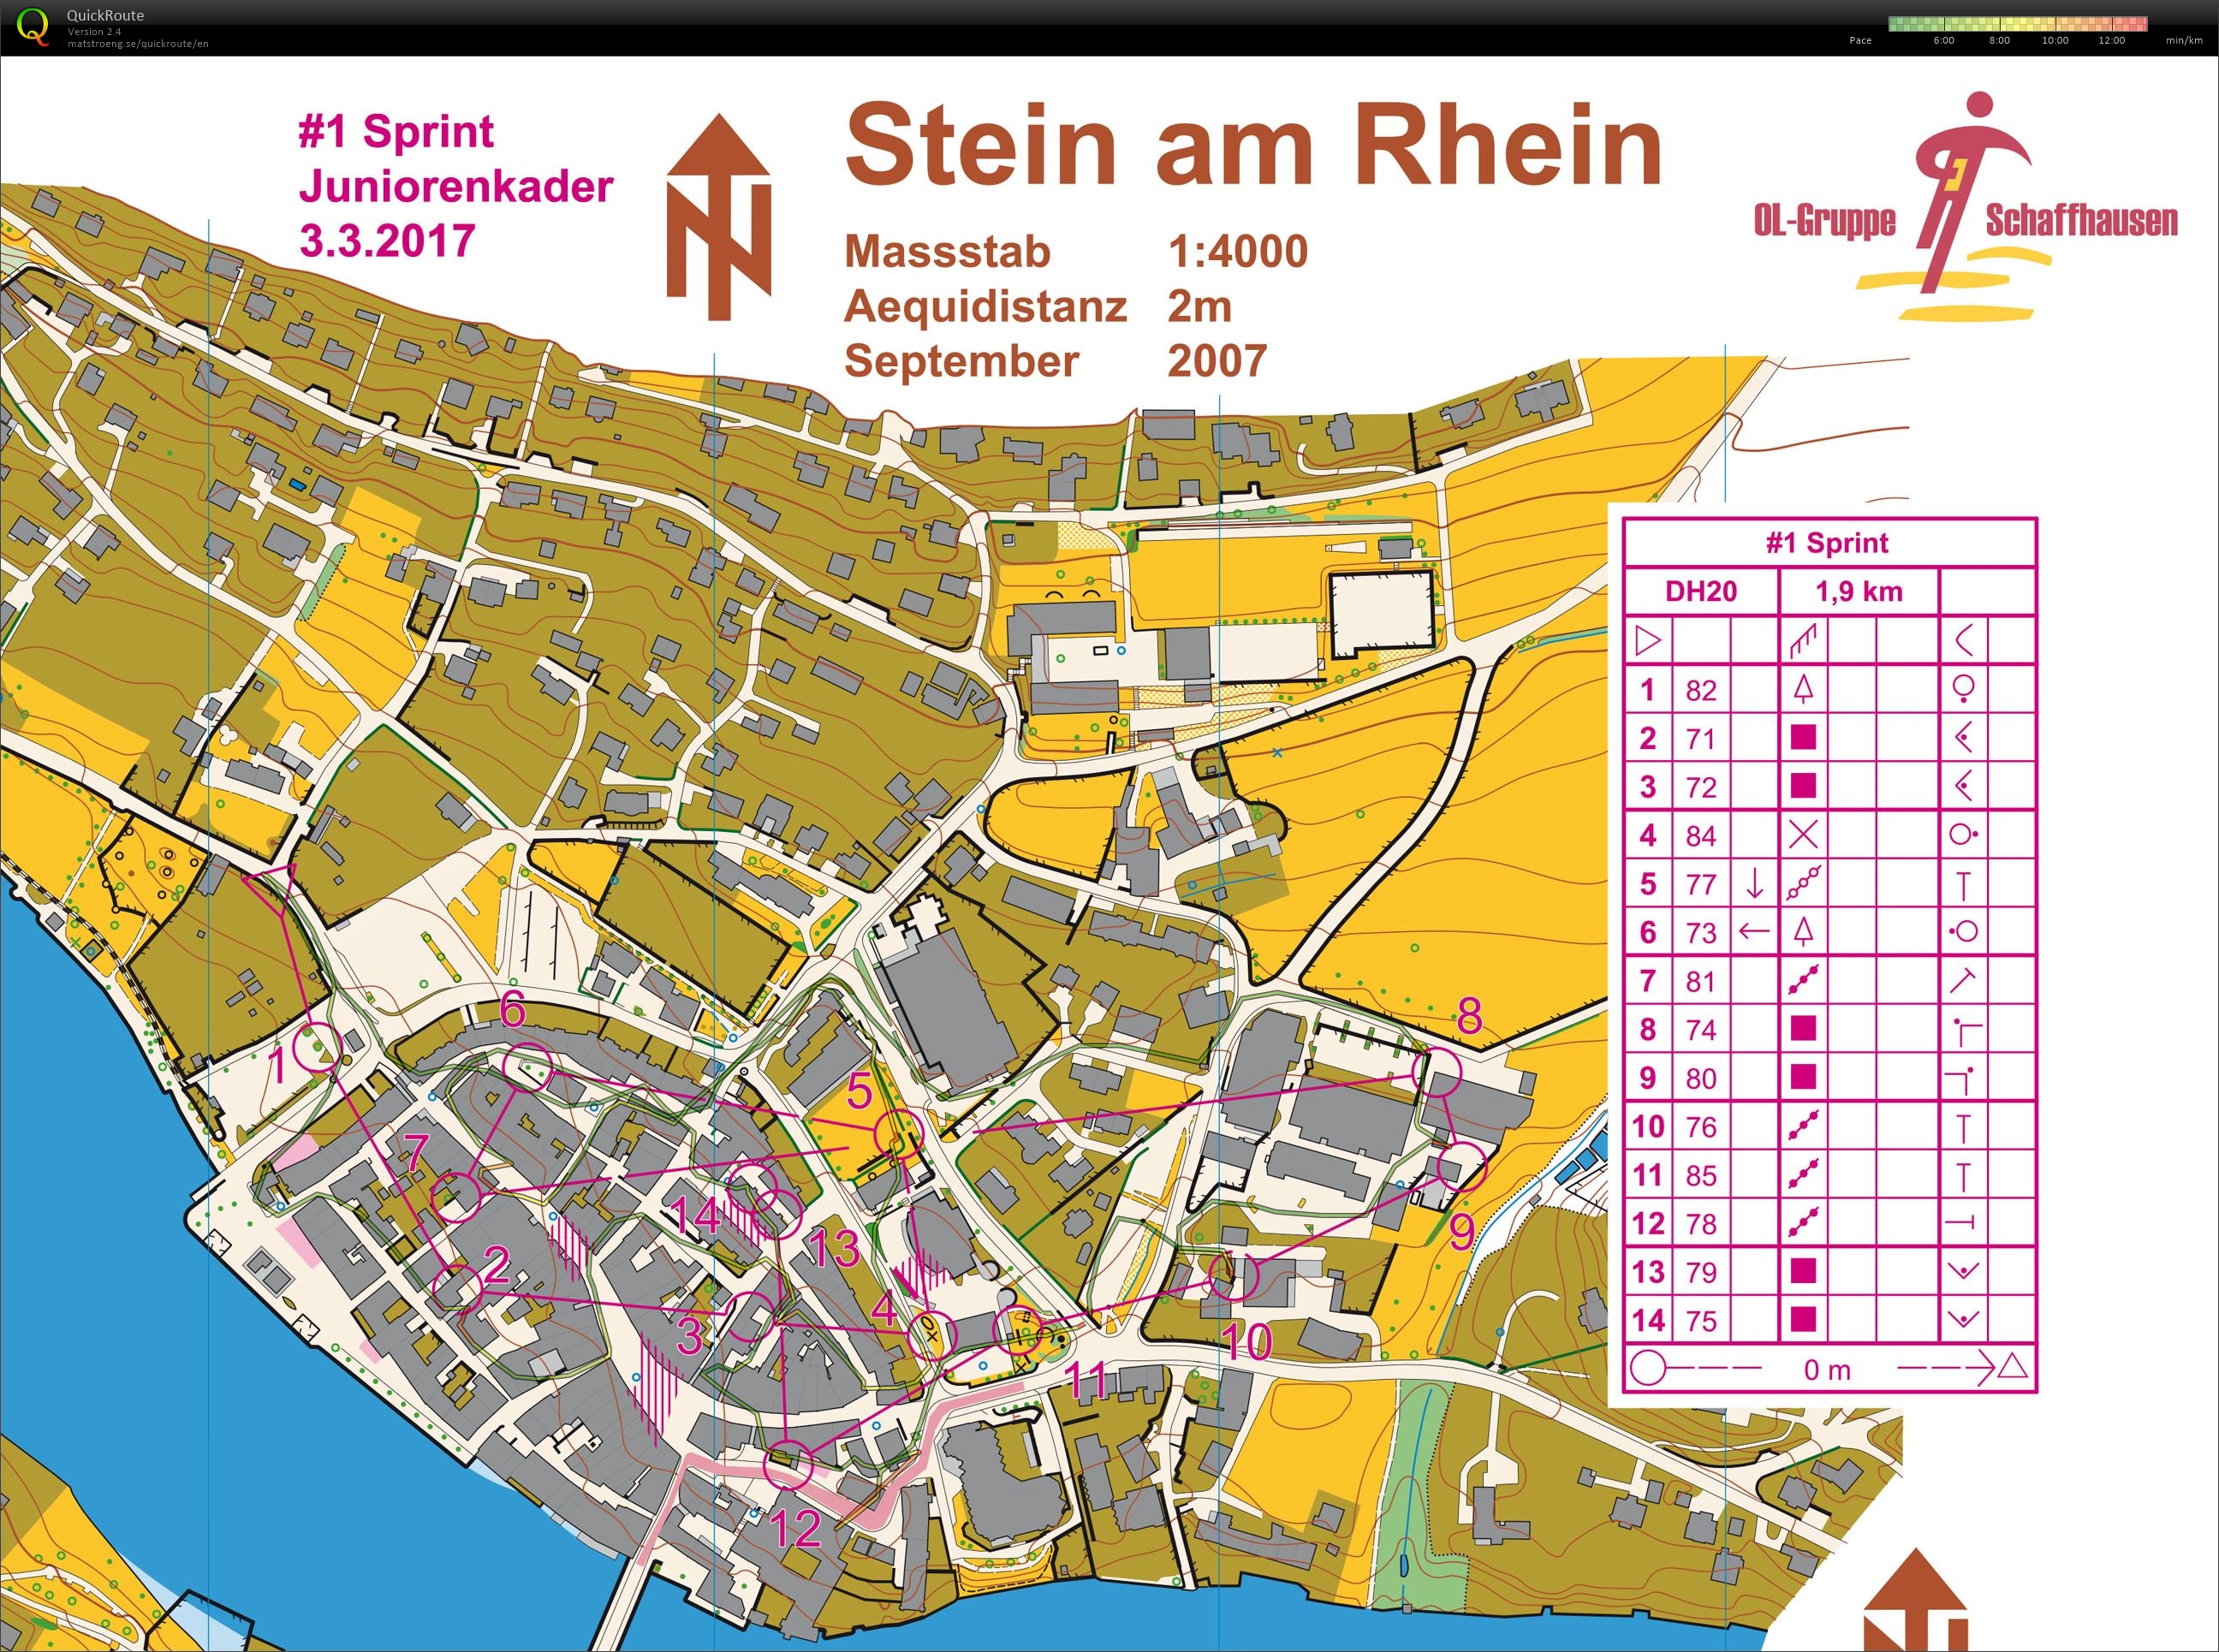 Stein am Rhein (24/07/2020)